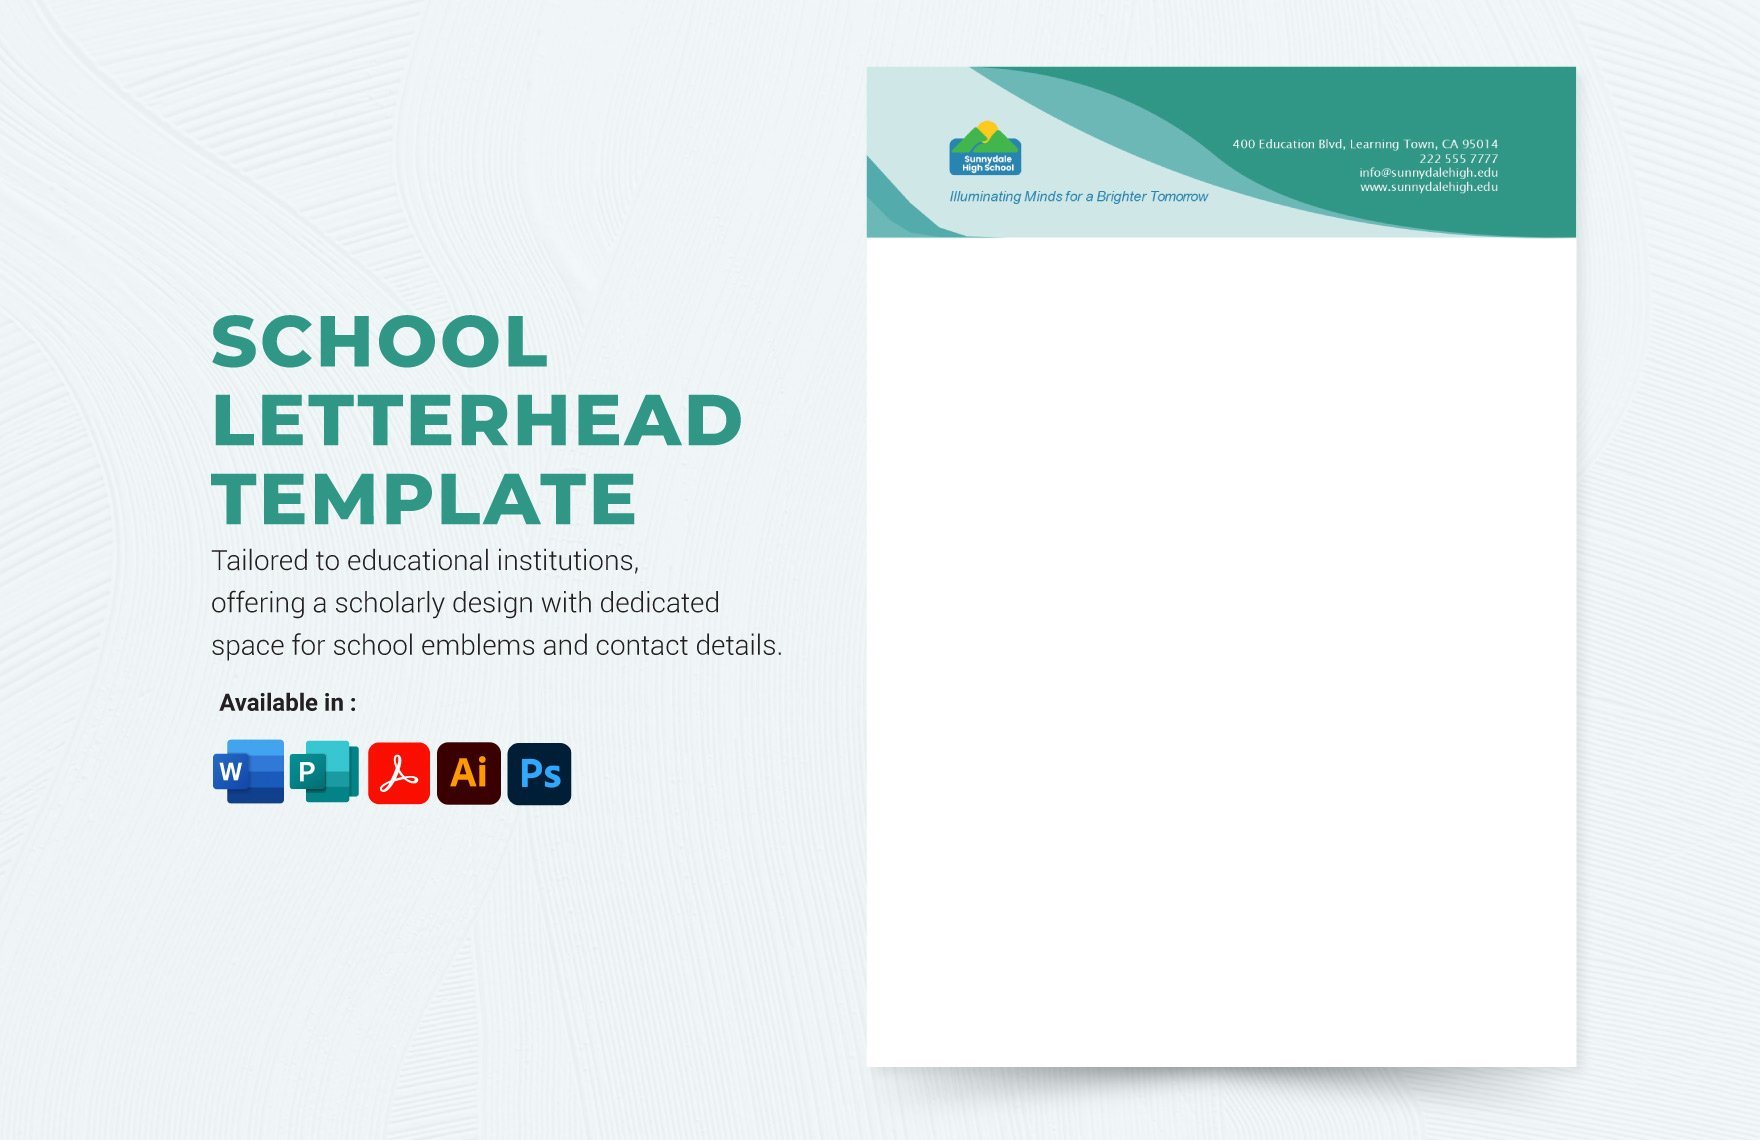 Free School Letterhead Template